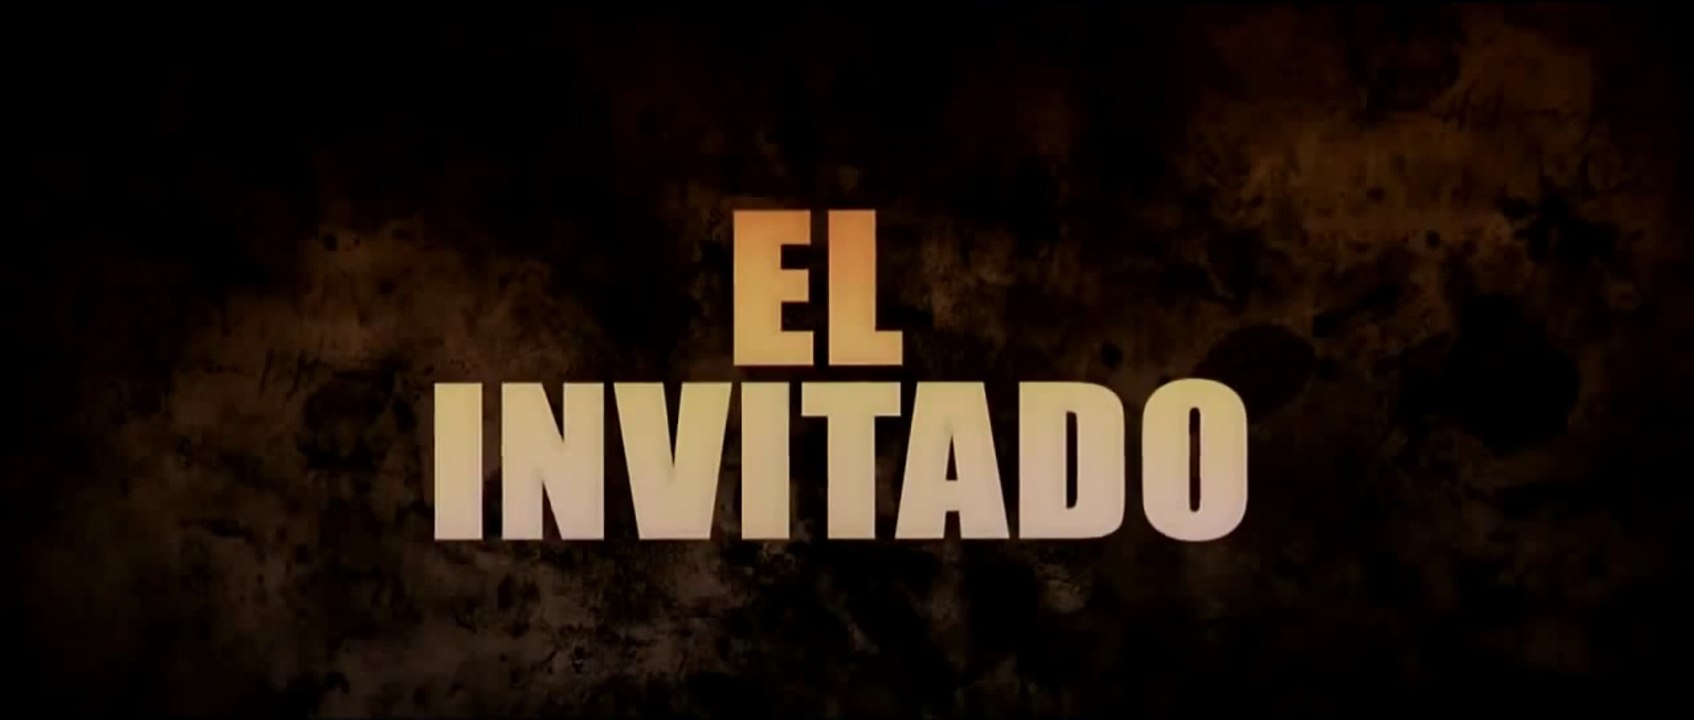 EL INVITADO (2012) Trailer - SPANISH - Vidéo Dailymotion